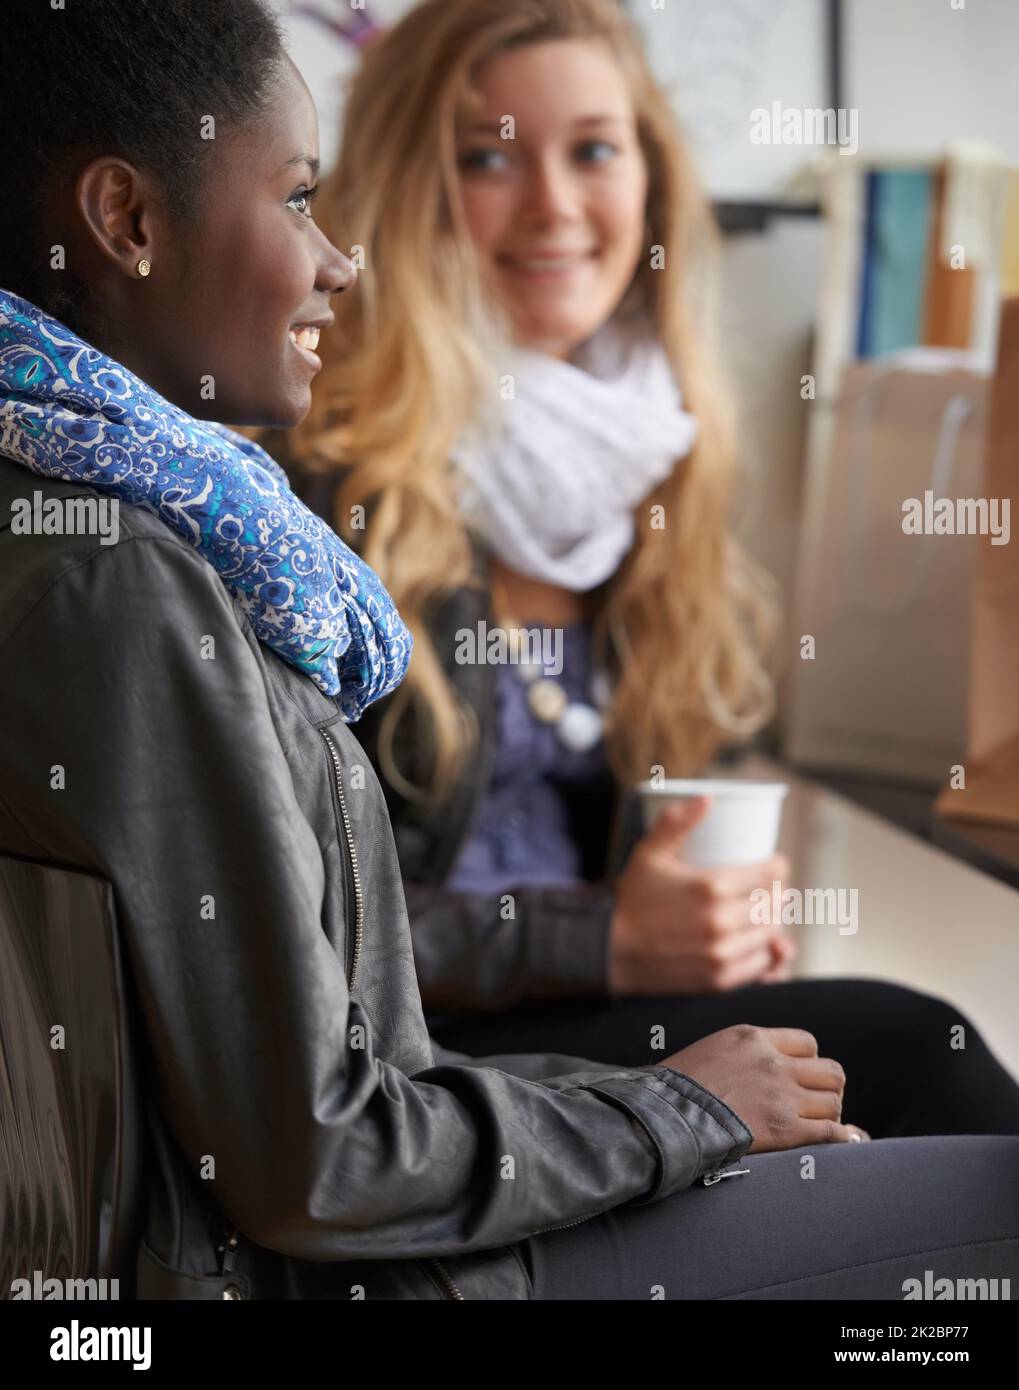 Gustare una tazza di caffè insieme. Due giovani donne che acquistano caffè insieme. Foto Stock